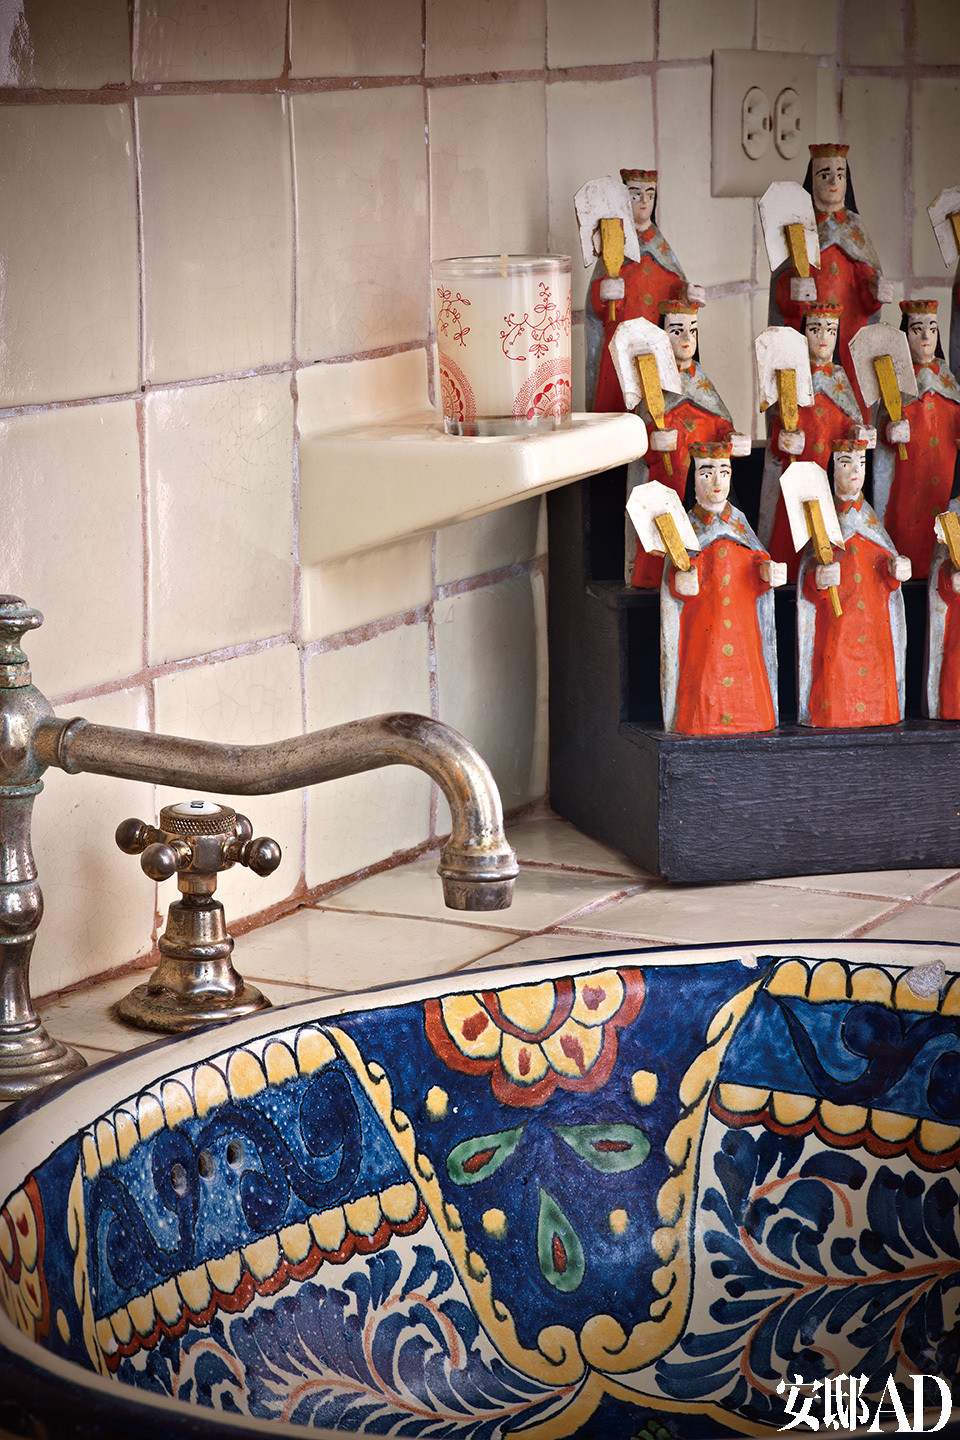 洗手间内的图案及色彩具有明显的西班牙风格。